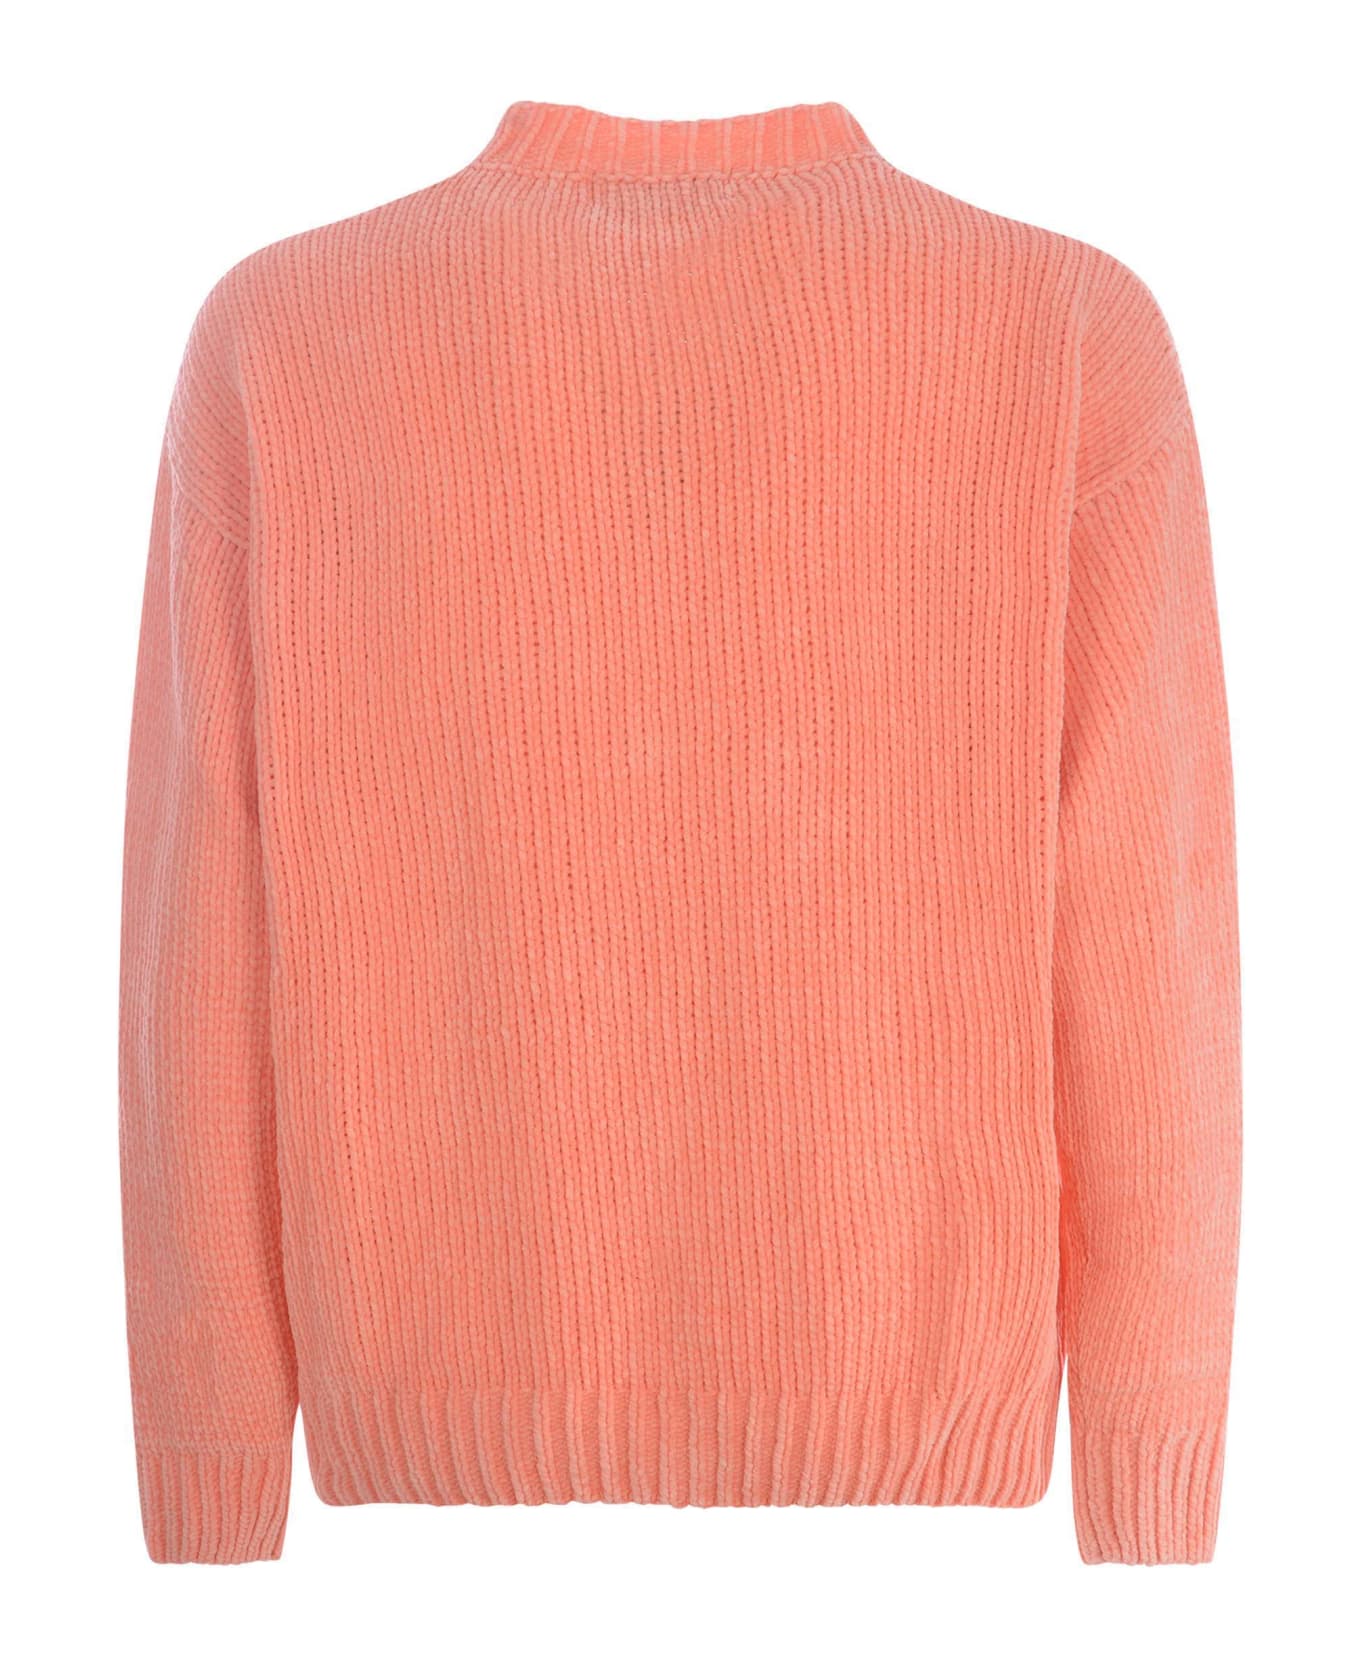 Bonsai Sweater Bonsai In Cotton Blend - Arancione chiaro